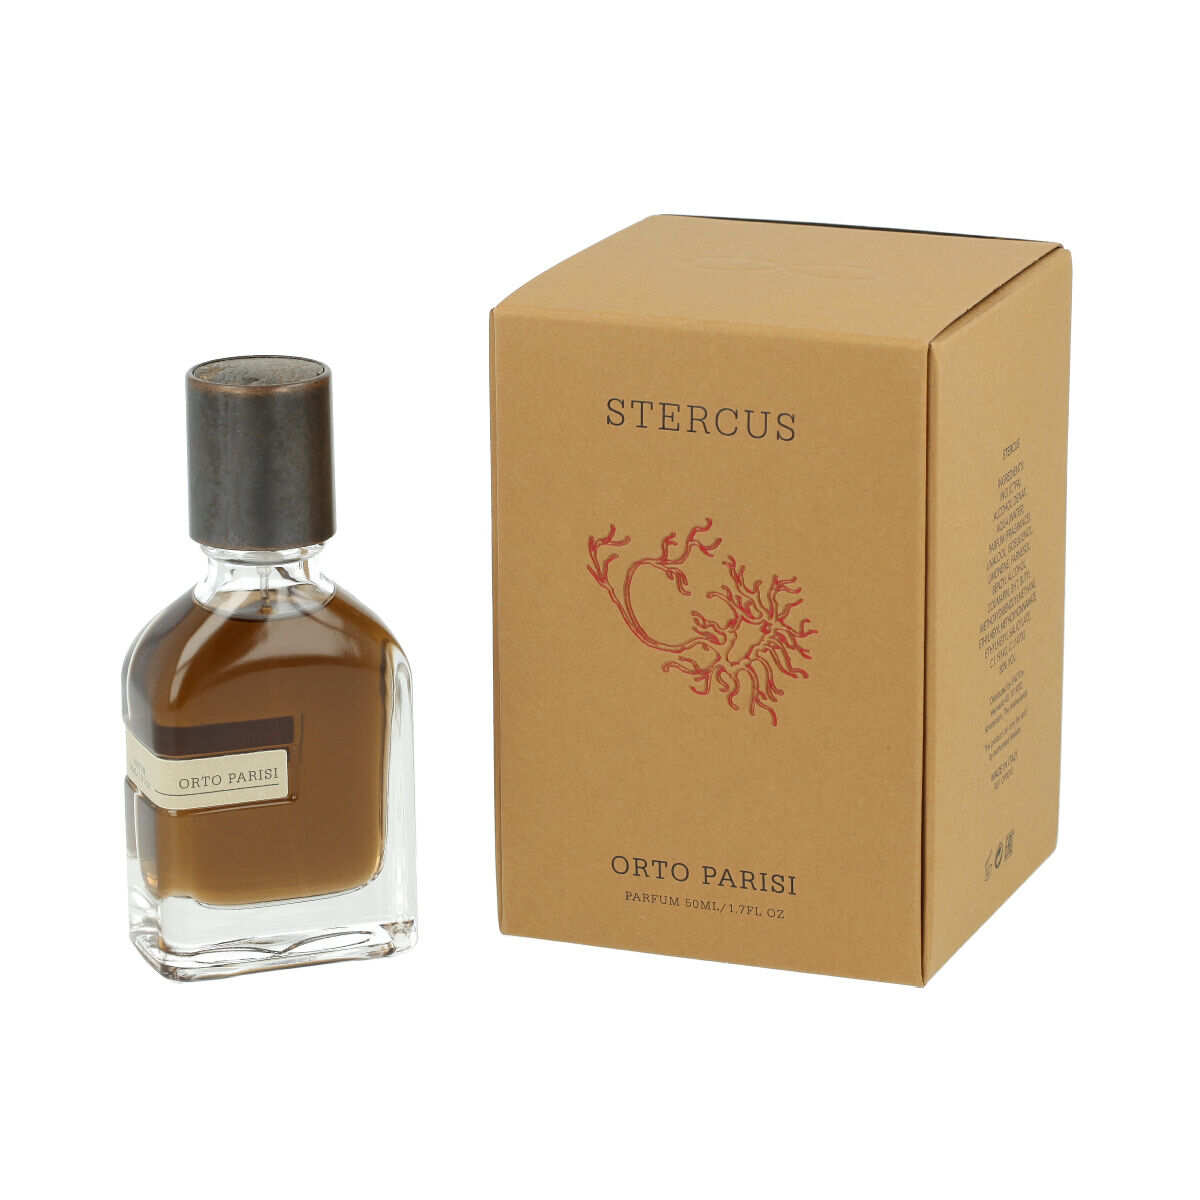 Parfum Unisex Orto Parisi Stercus (50 ml)